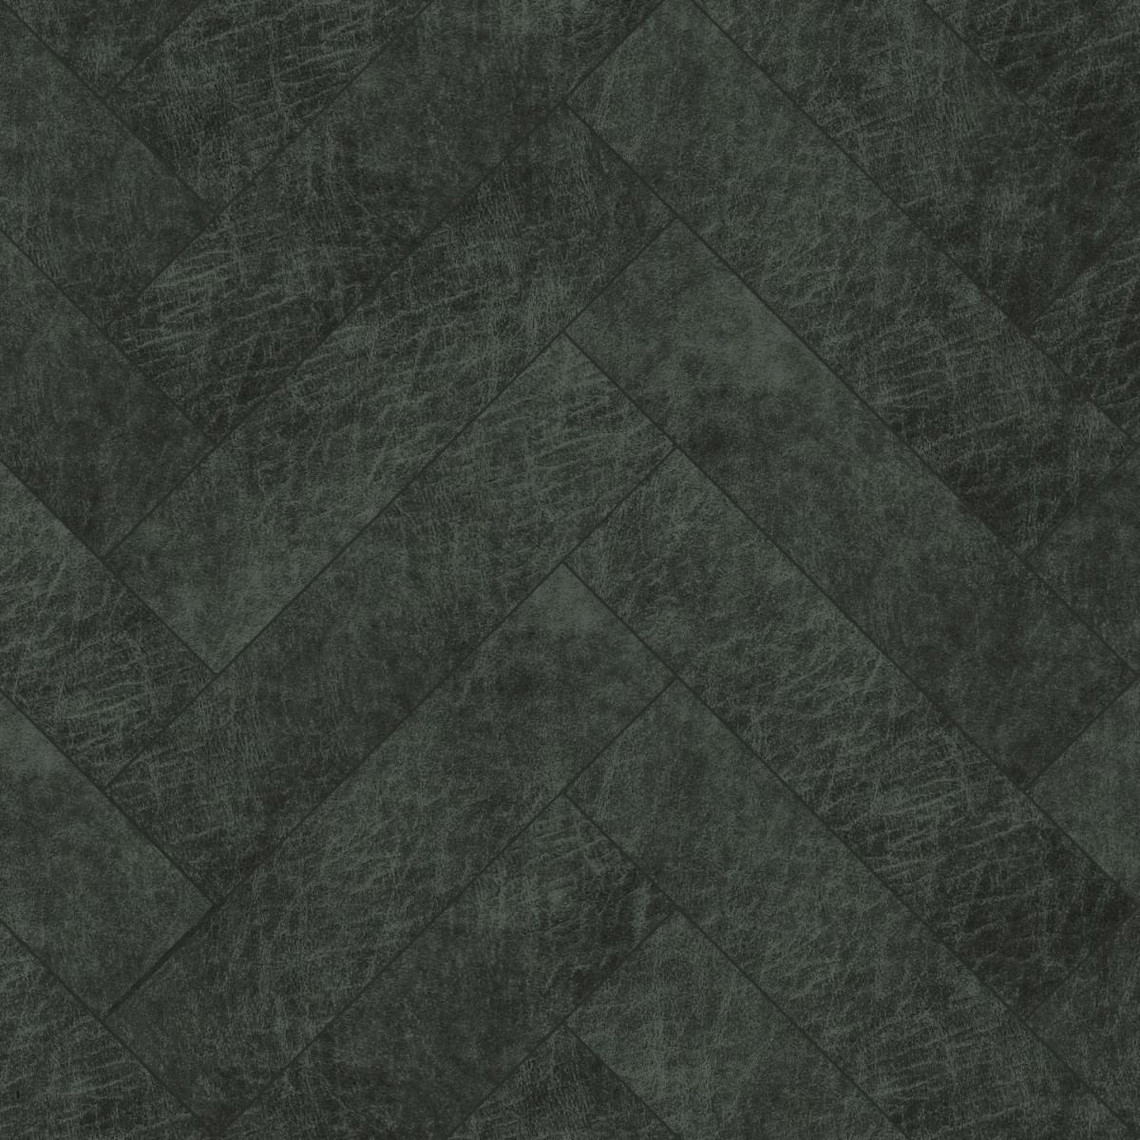 Origin Origin panneaux muraux éco-cuir adhésifs chevron gris charbon de bois - 357267 - 25 pan 40 x 10 cm